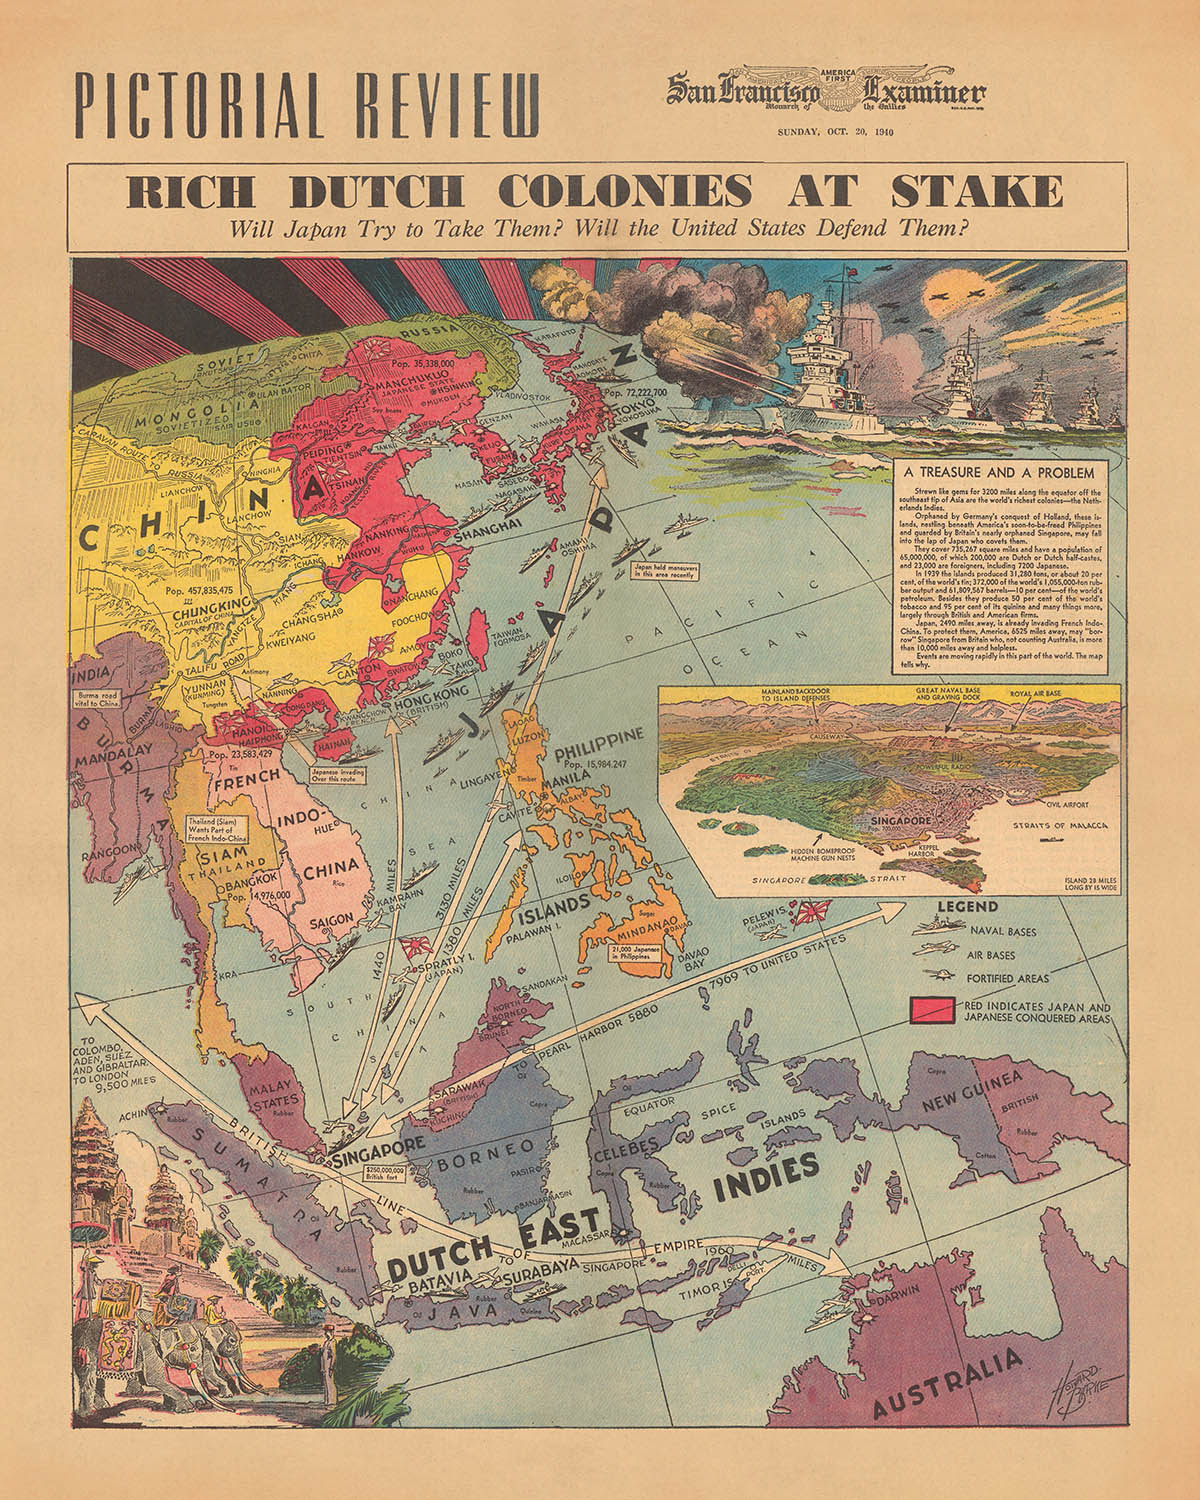 Alte Karte von Japan vs. niederländischen Kolonien im Zweiten Weltkrieg von Burke, 1940: Strategische Einsätze, Bildstil, globale Spannungen